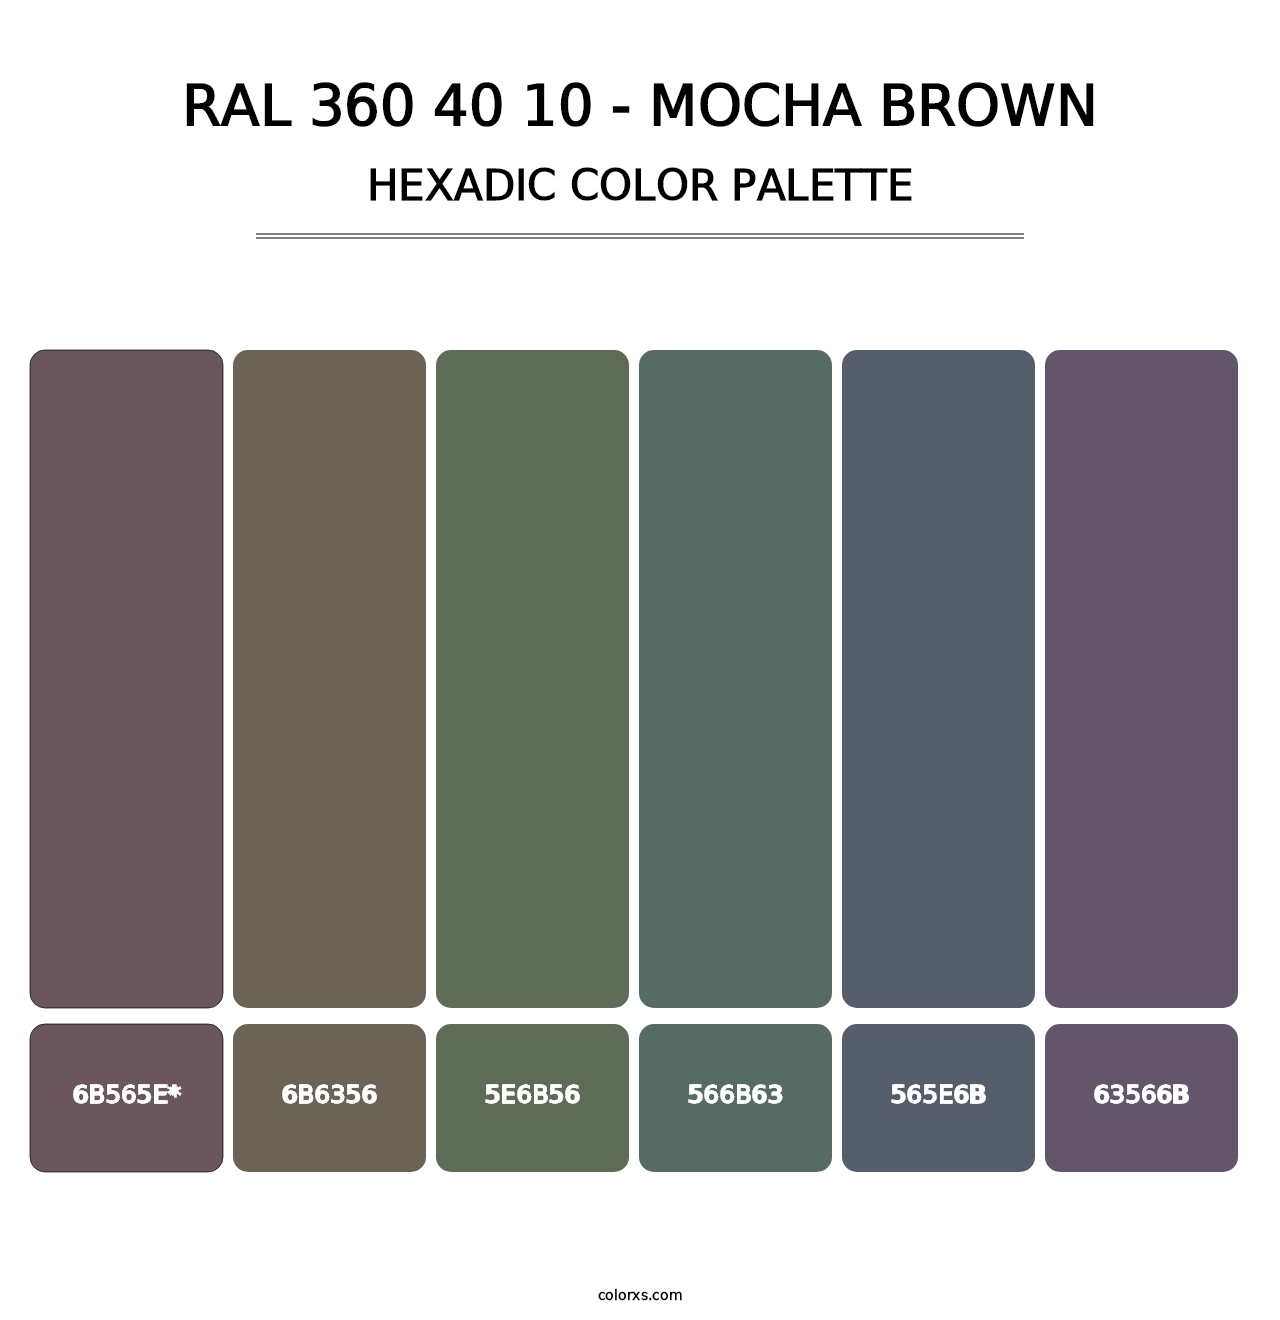 RAL 360 40 10 - Mocha Brown - Hexadic Color Palette